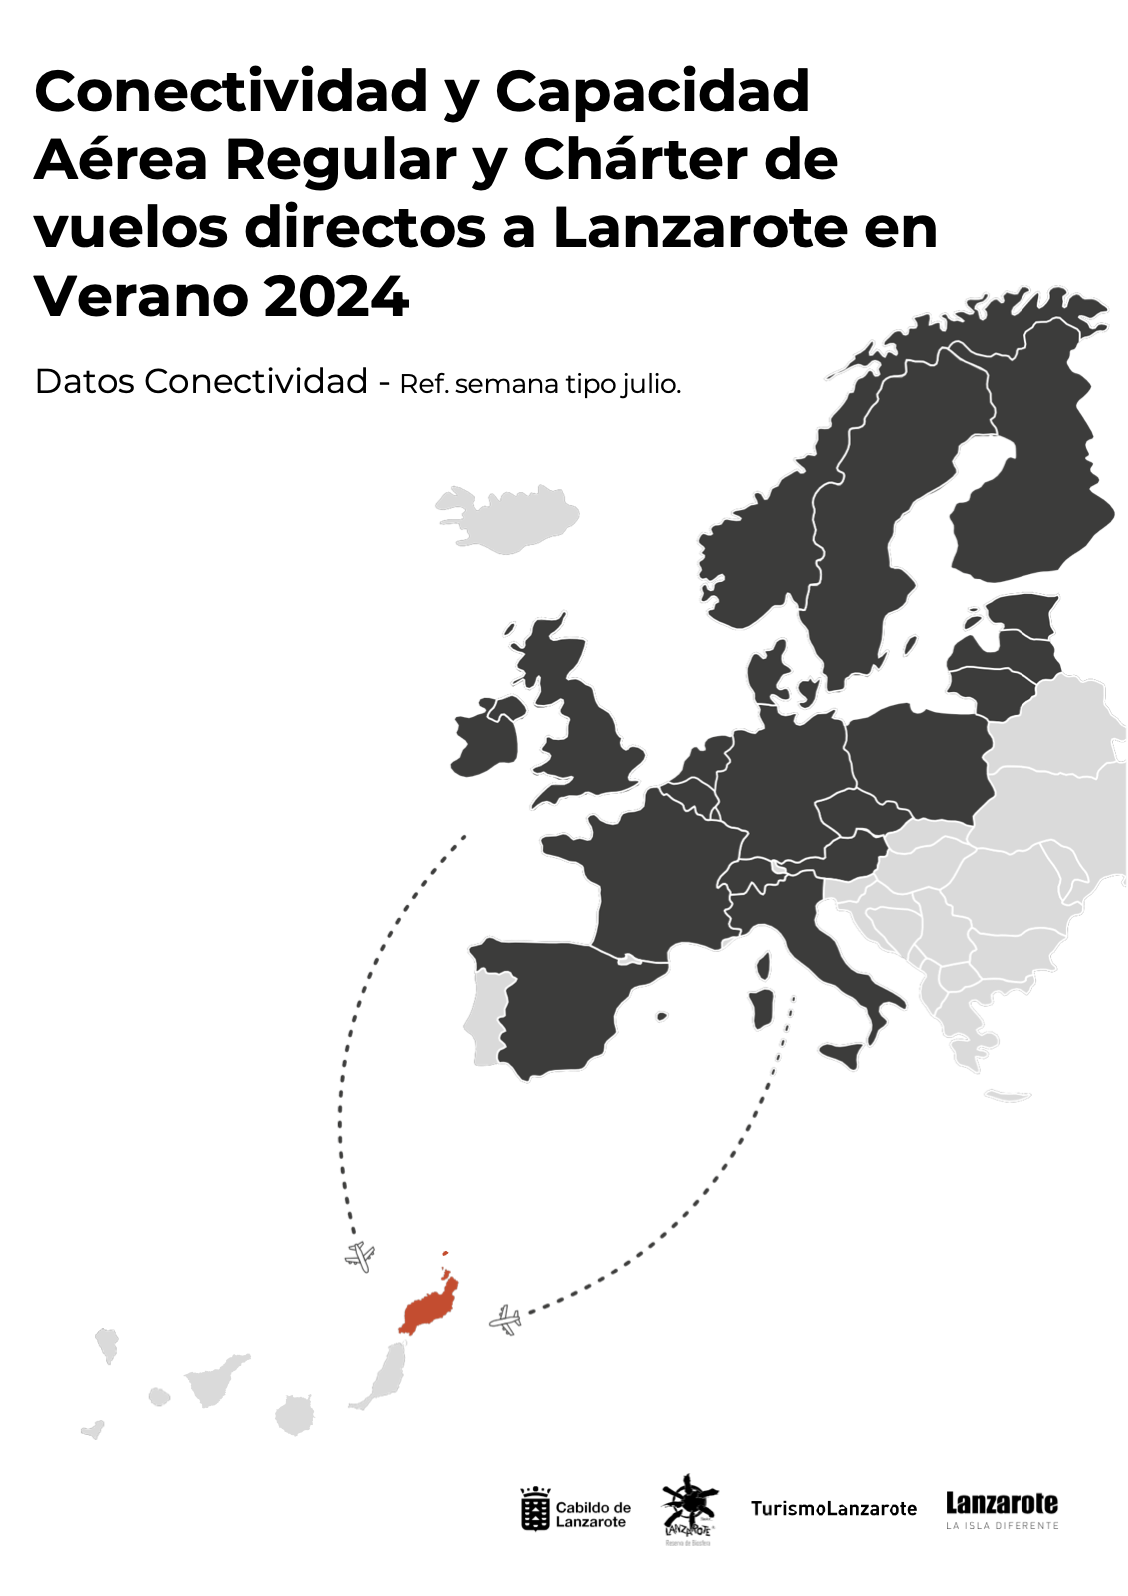 Turismo Lanzarote | Conectividad y capacidad aérea regular y chárter a Lanzarote | Verano 2024 ✈